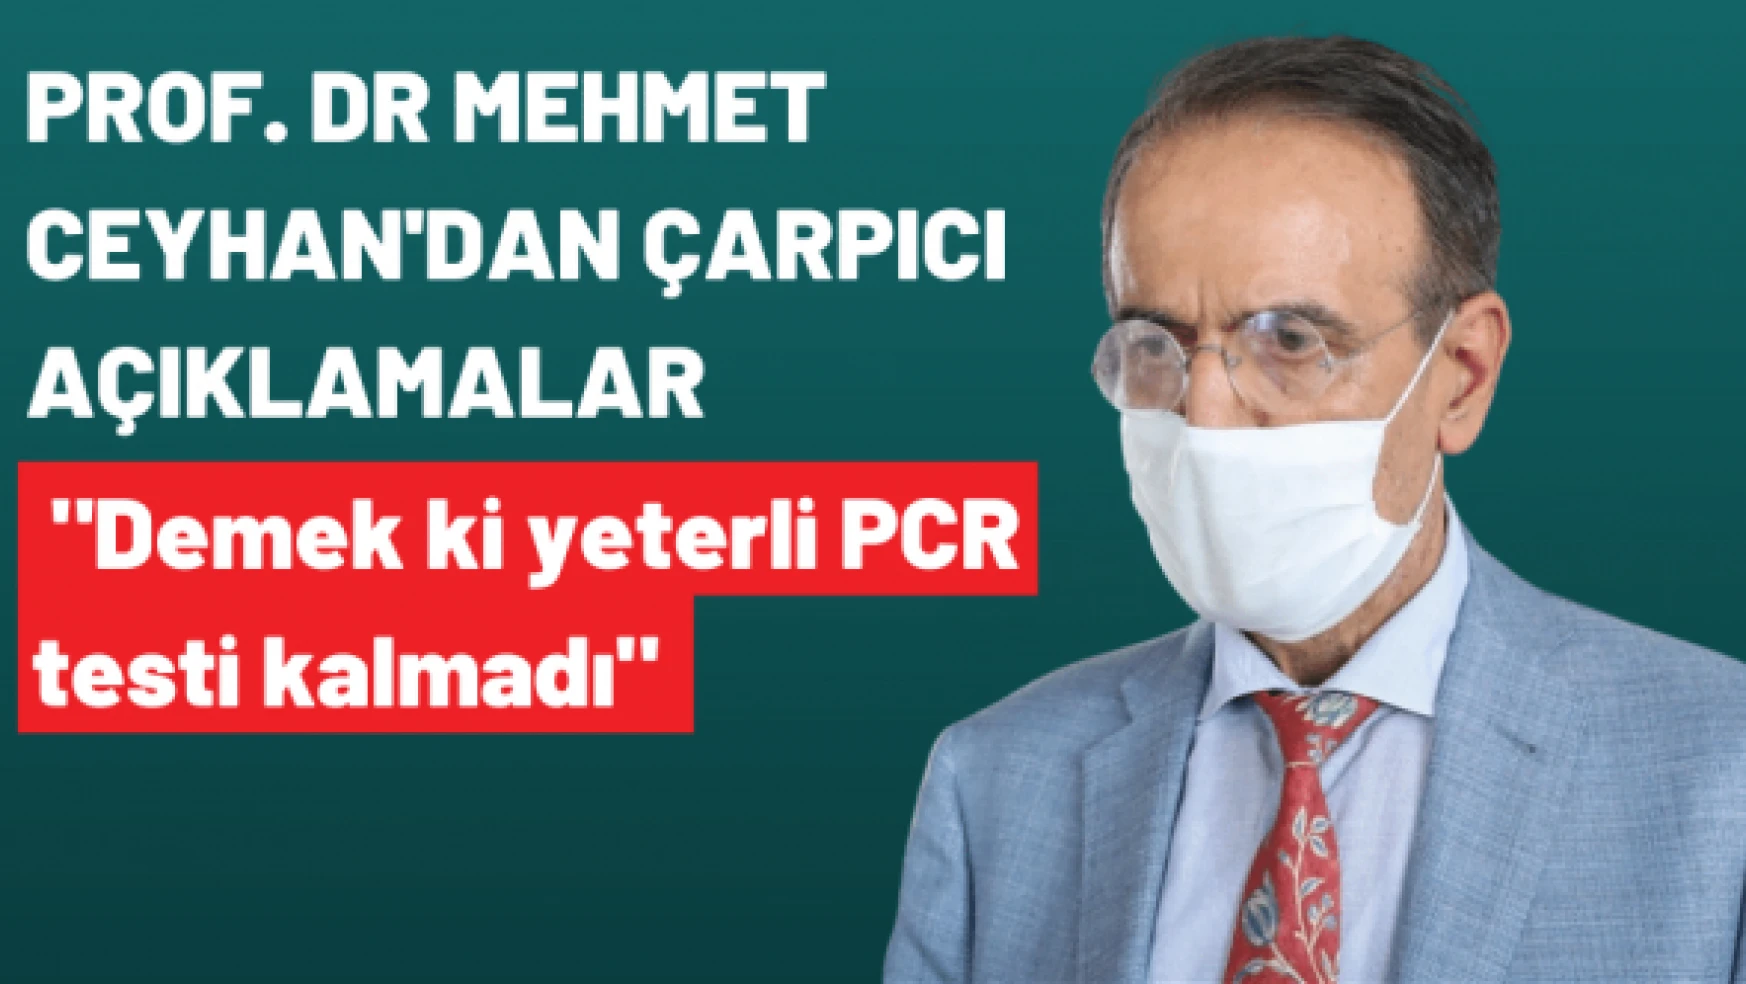 Prof. Mehmet Ceyhan: &quotDemek ki yeterli PCR testi kalmadı"